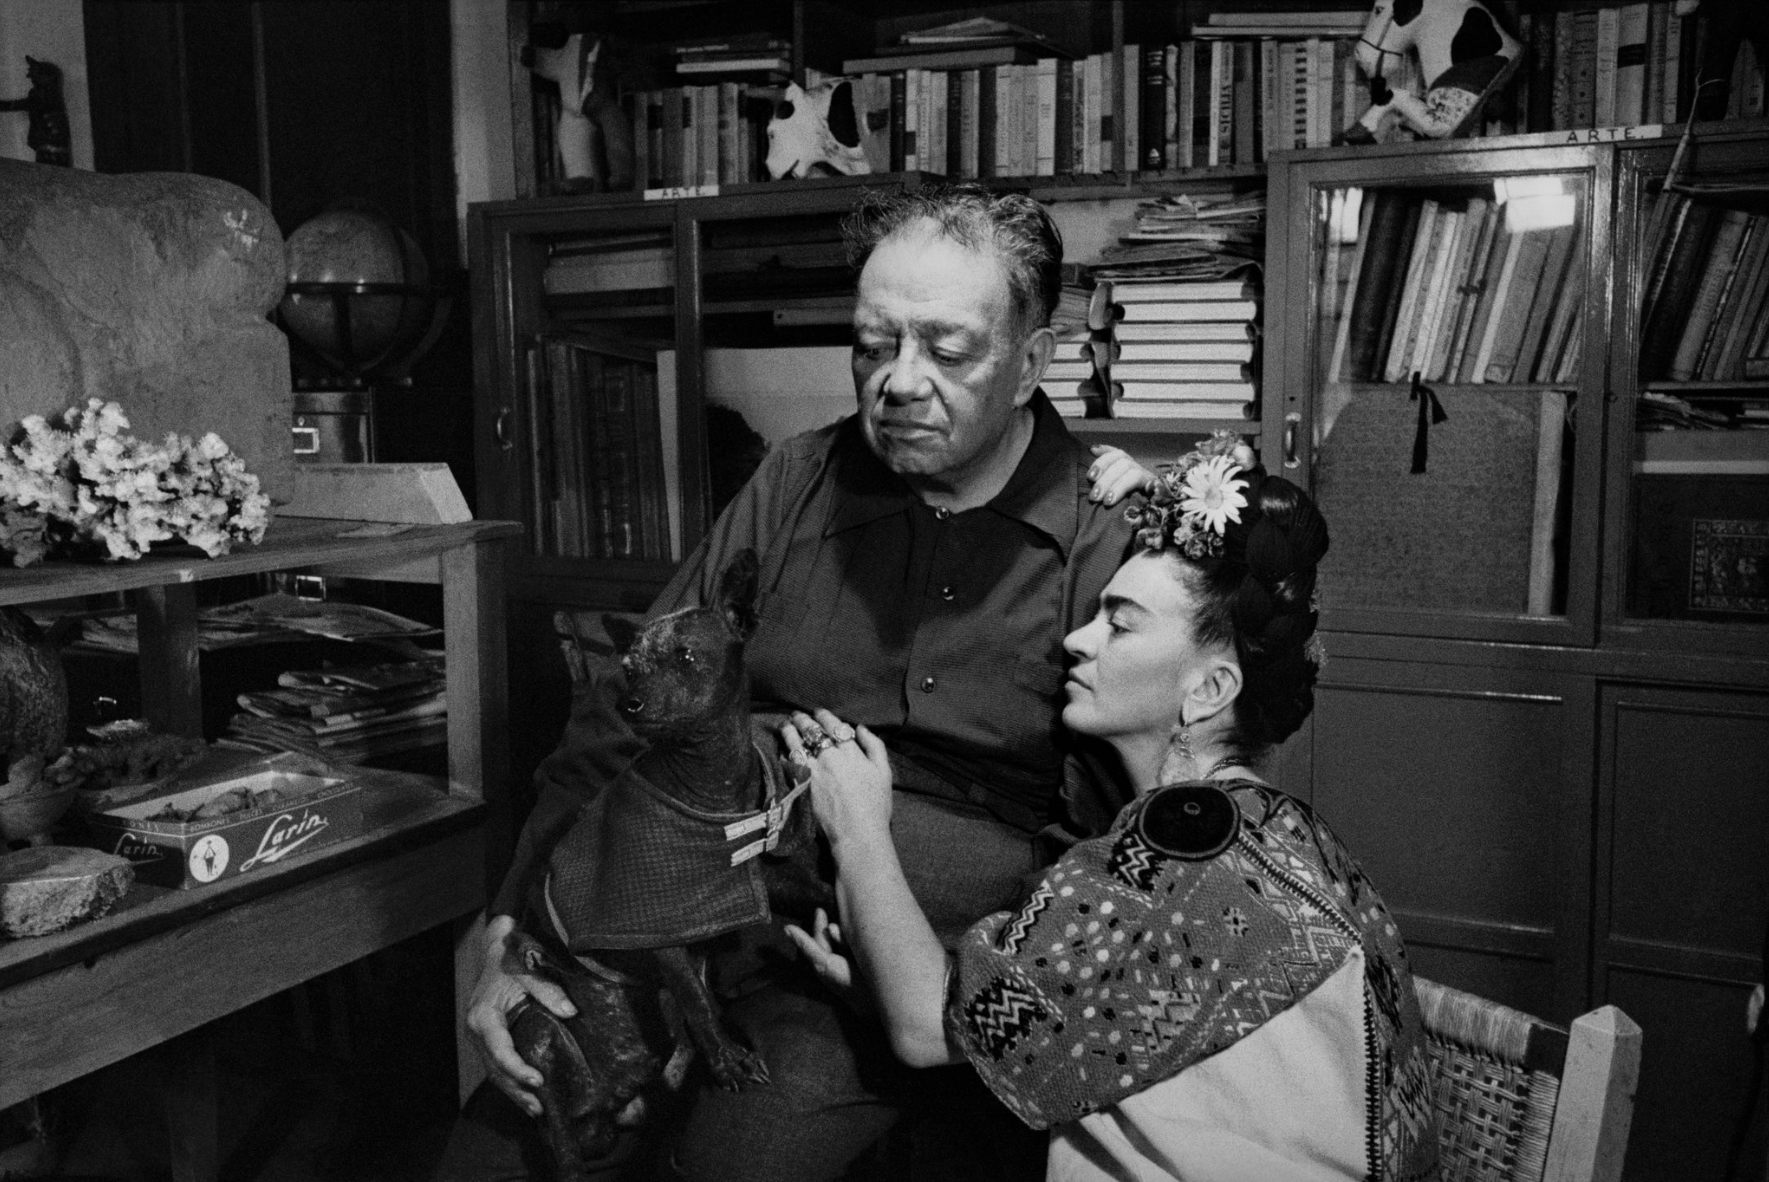 Diego Rivera e Frida Kahlo